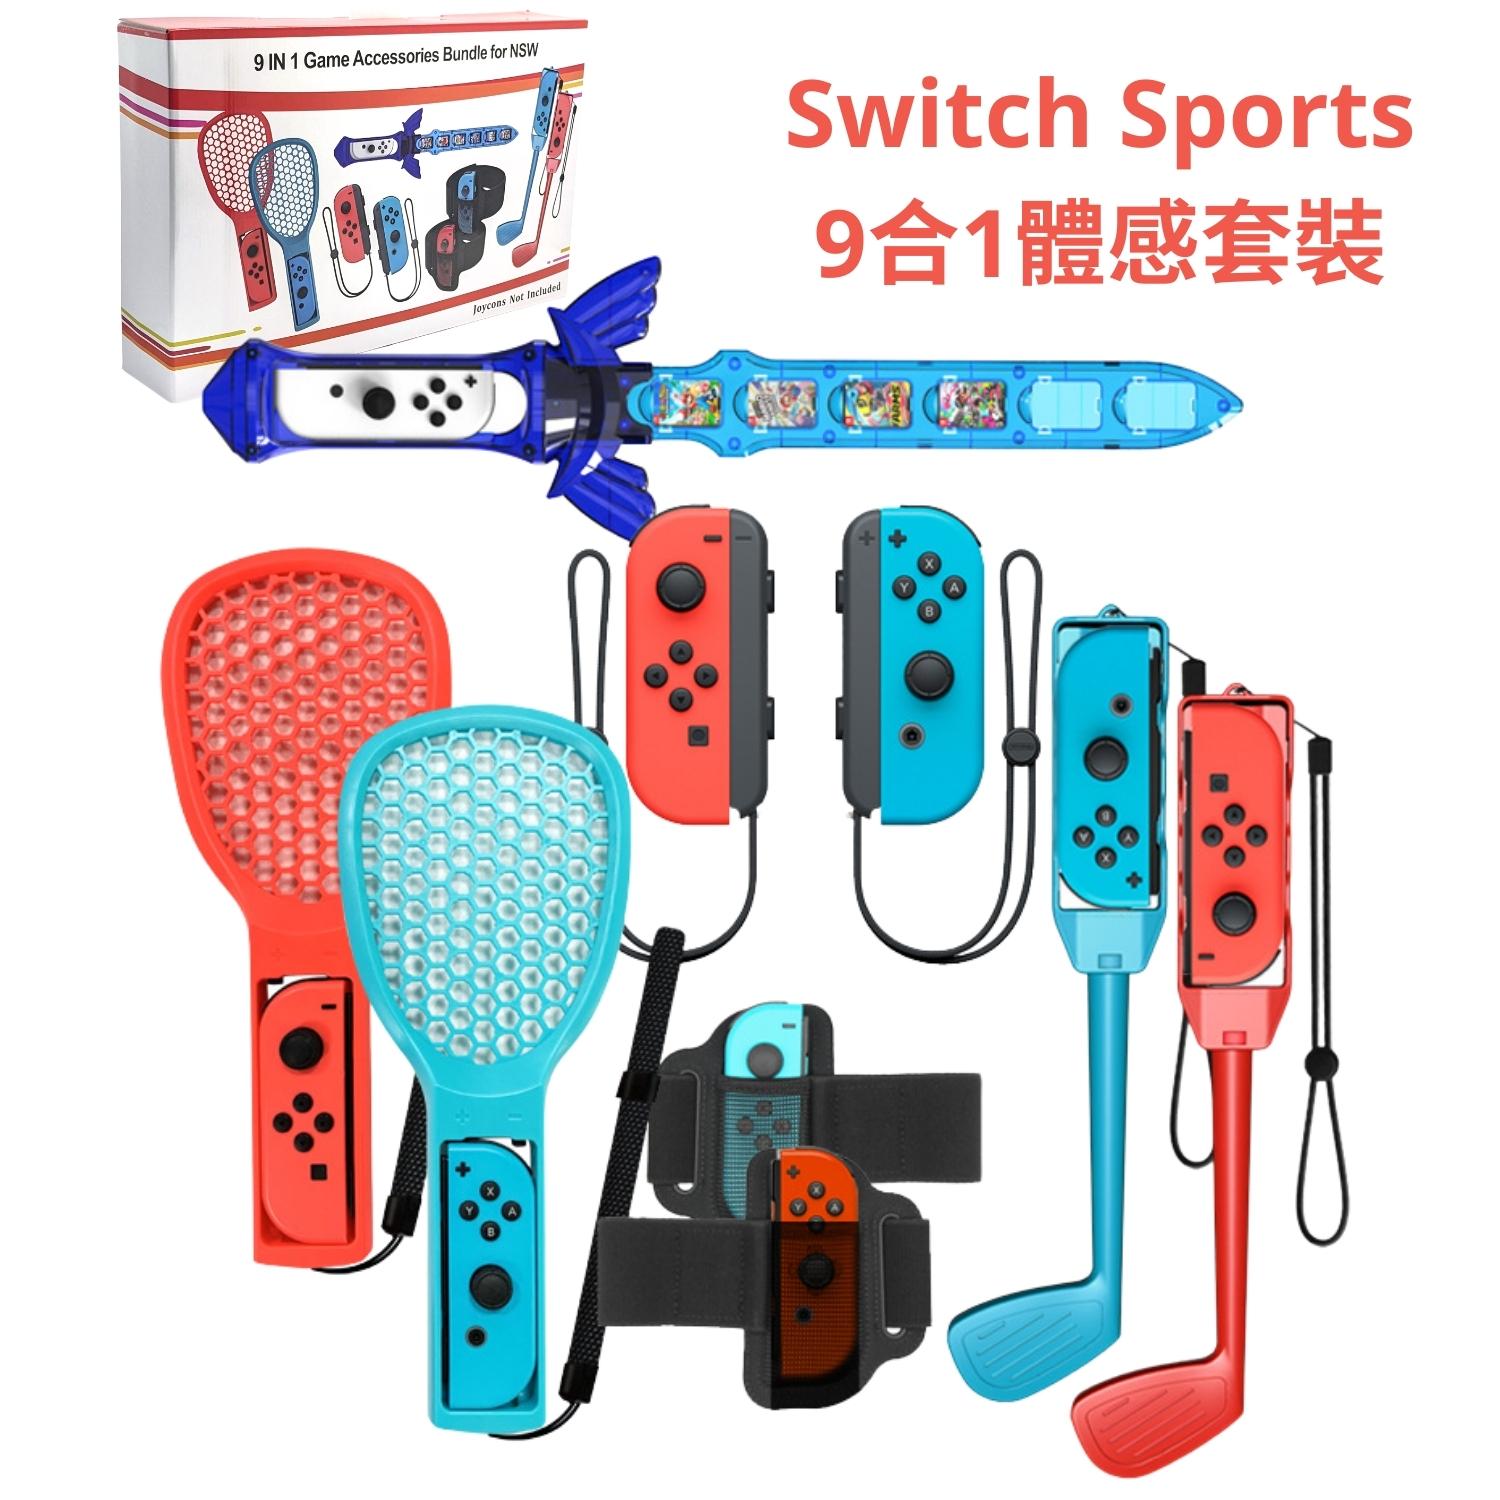 [現貨] Switch Sports 9合1體感套裝 配件組 適 NS 運動 JoyCon 網球拍 劍 腕帶 高爾夫球杆 _HH2